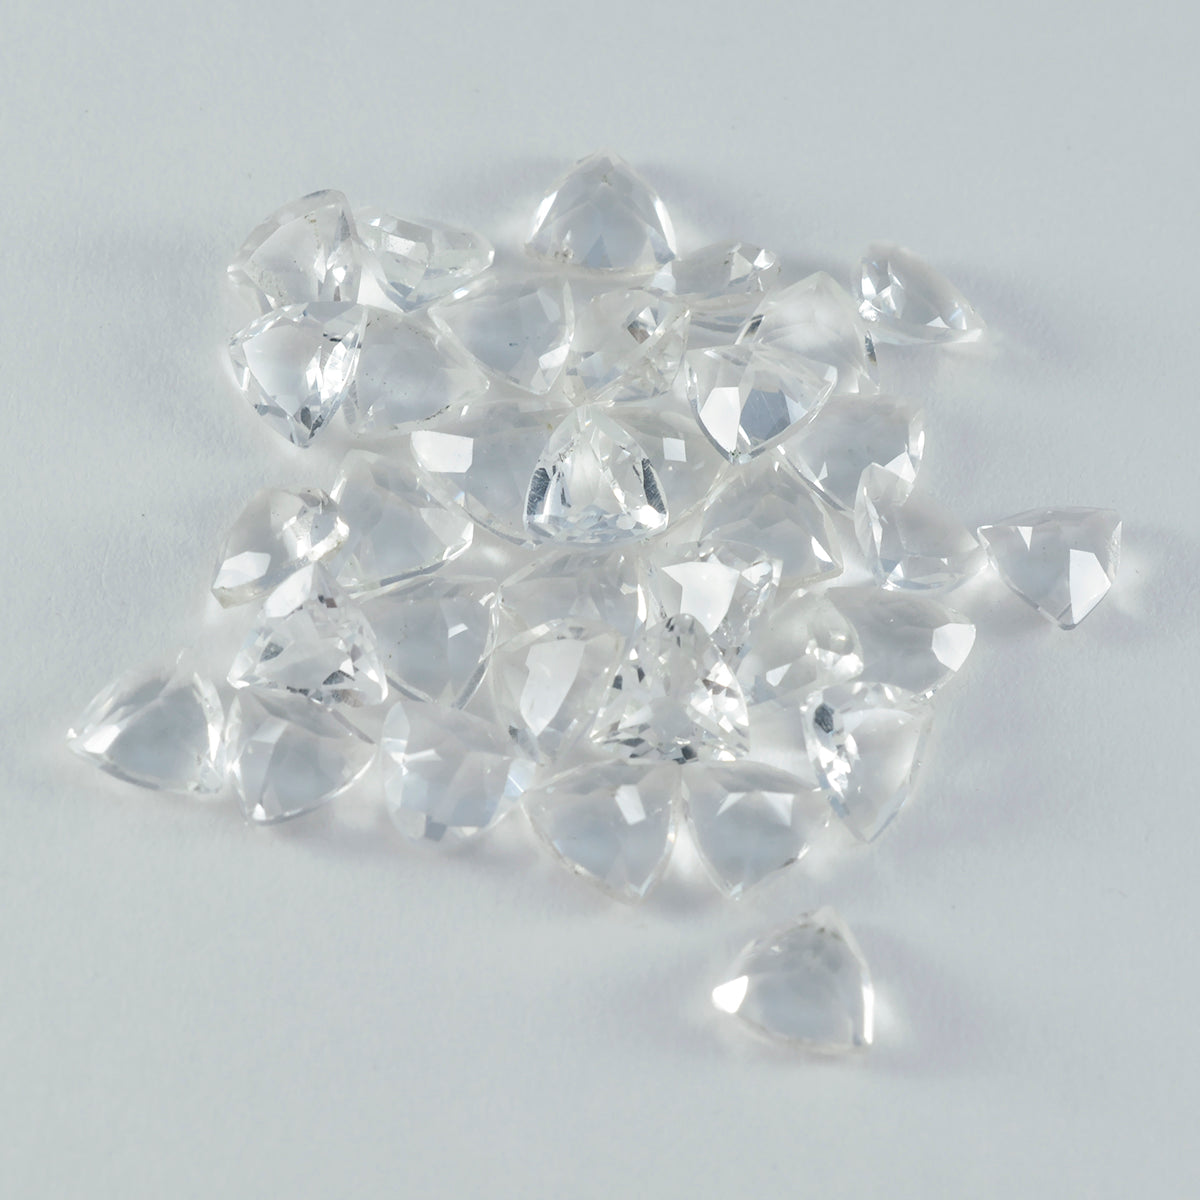 Riyogems 1 Stück weißer Kristallquarz, facettiert, 7 x 7 mm, Billionenform, Edelstein von hervorragender Qualität